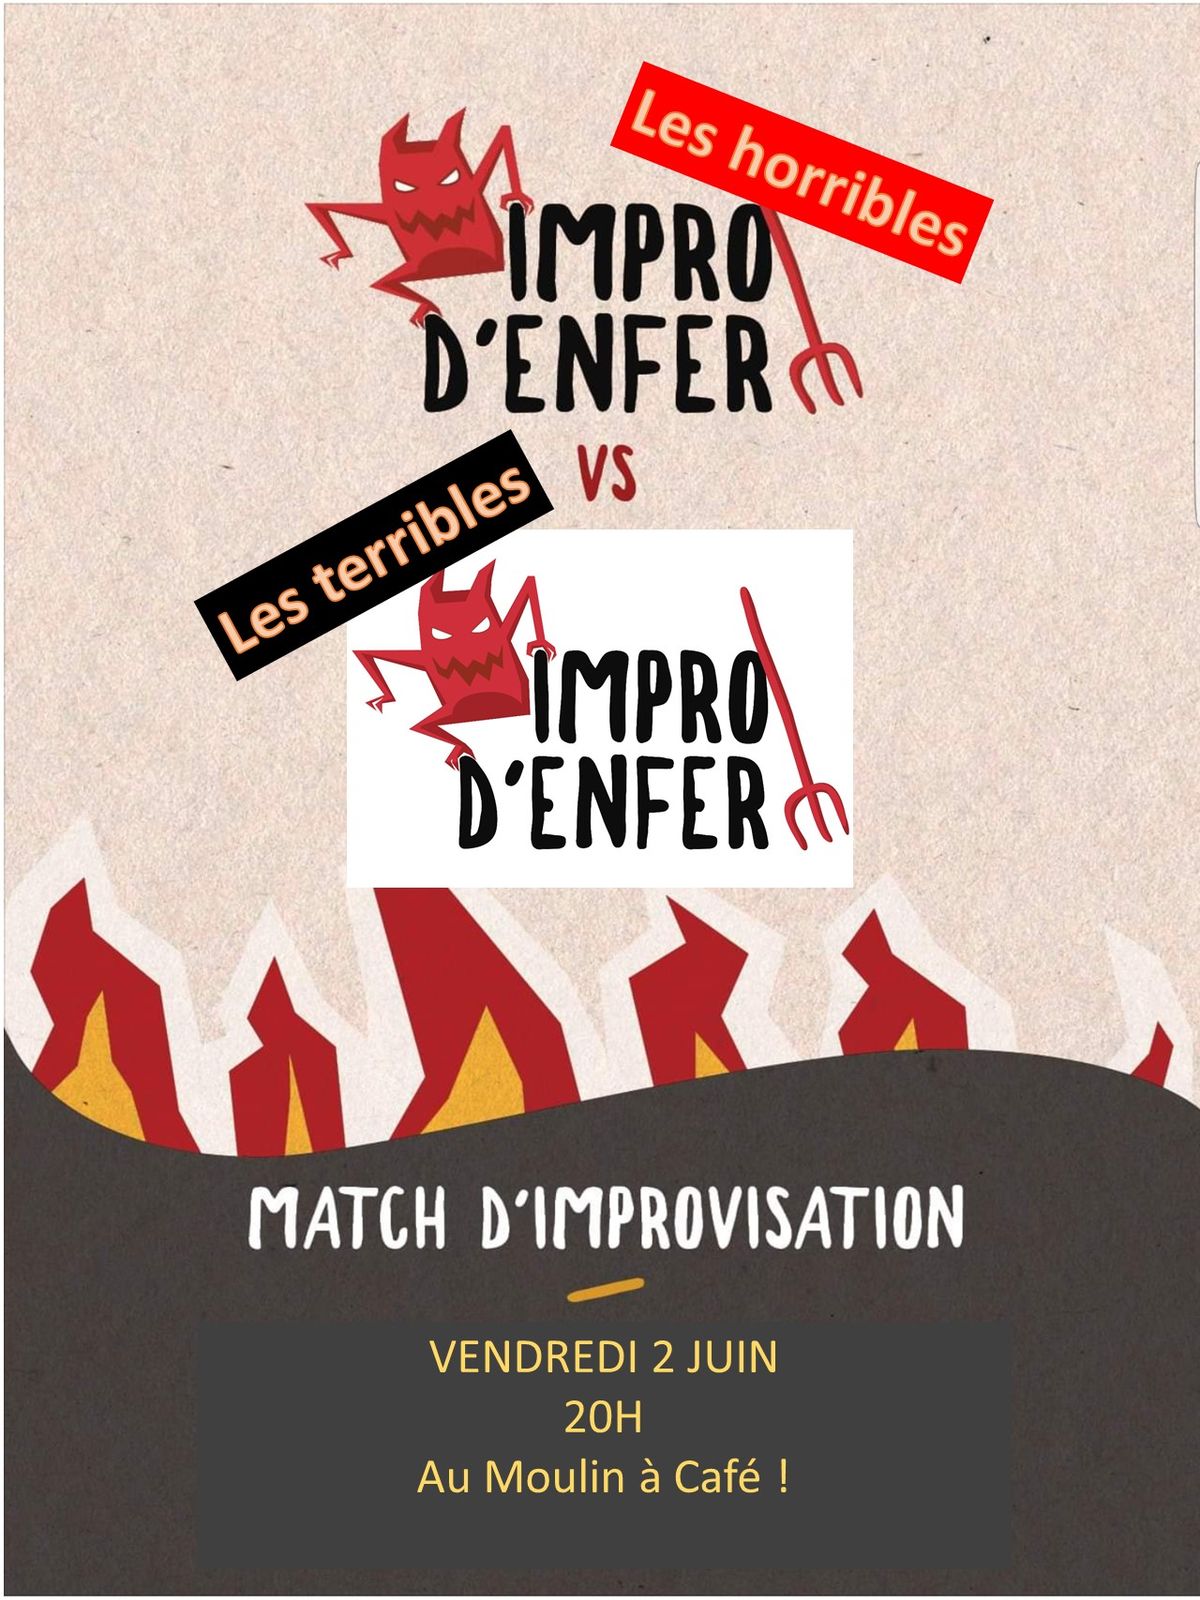 Match d'improvisation Impro D'Enfer vs Impro D'Enfer